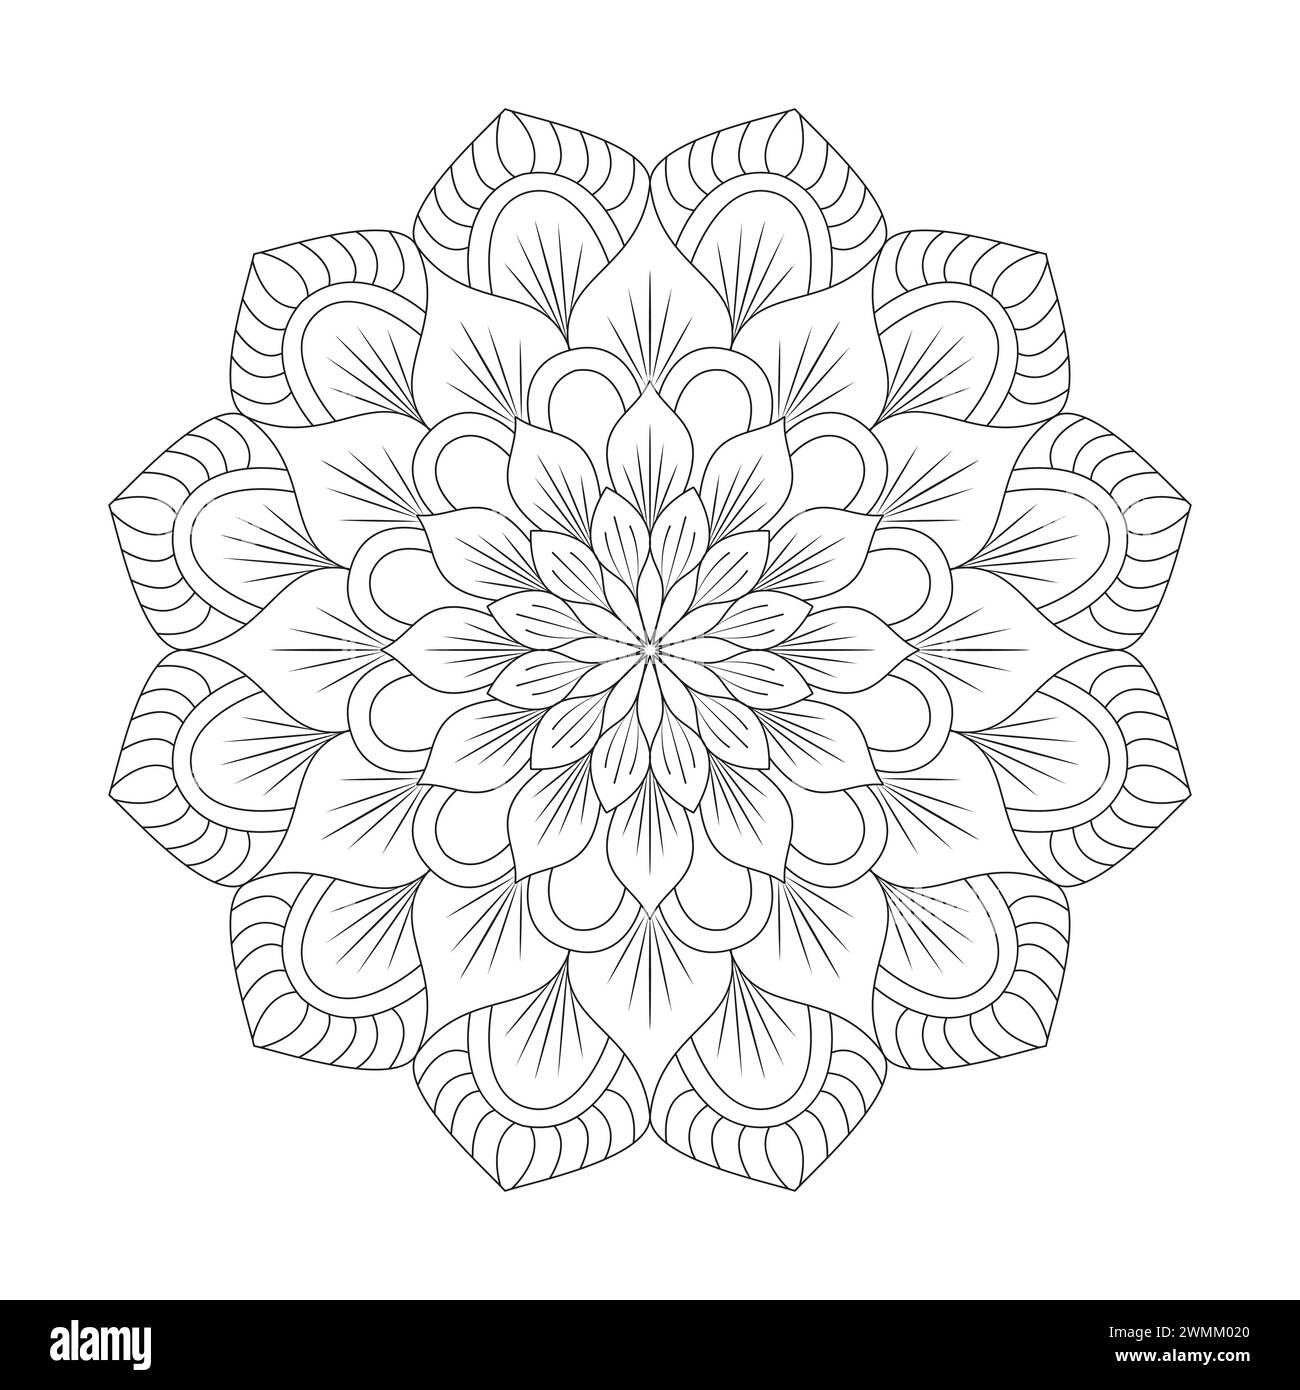 Rätselhafte Floral Creativity Mandala Malbuchseite für kdp Book Interior. Friedliche Blütenblätter, Fähigkeit zum Entspannen, Gehirnerlebnisse, harmonische Oase, Stock Vektor